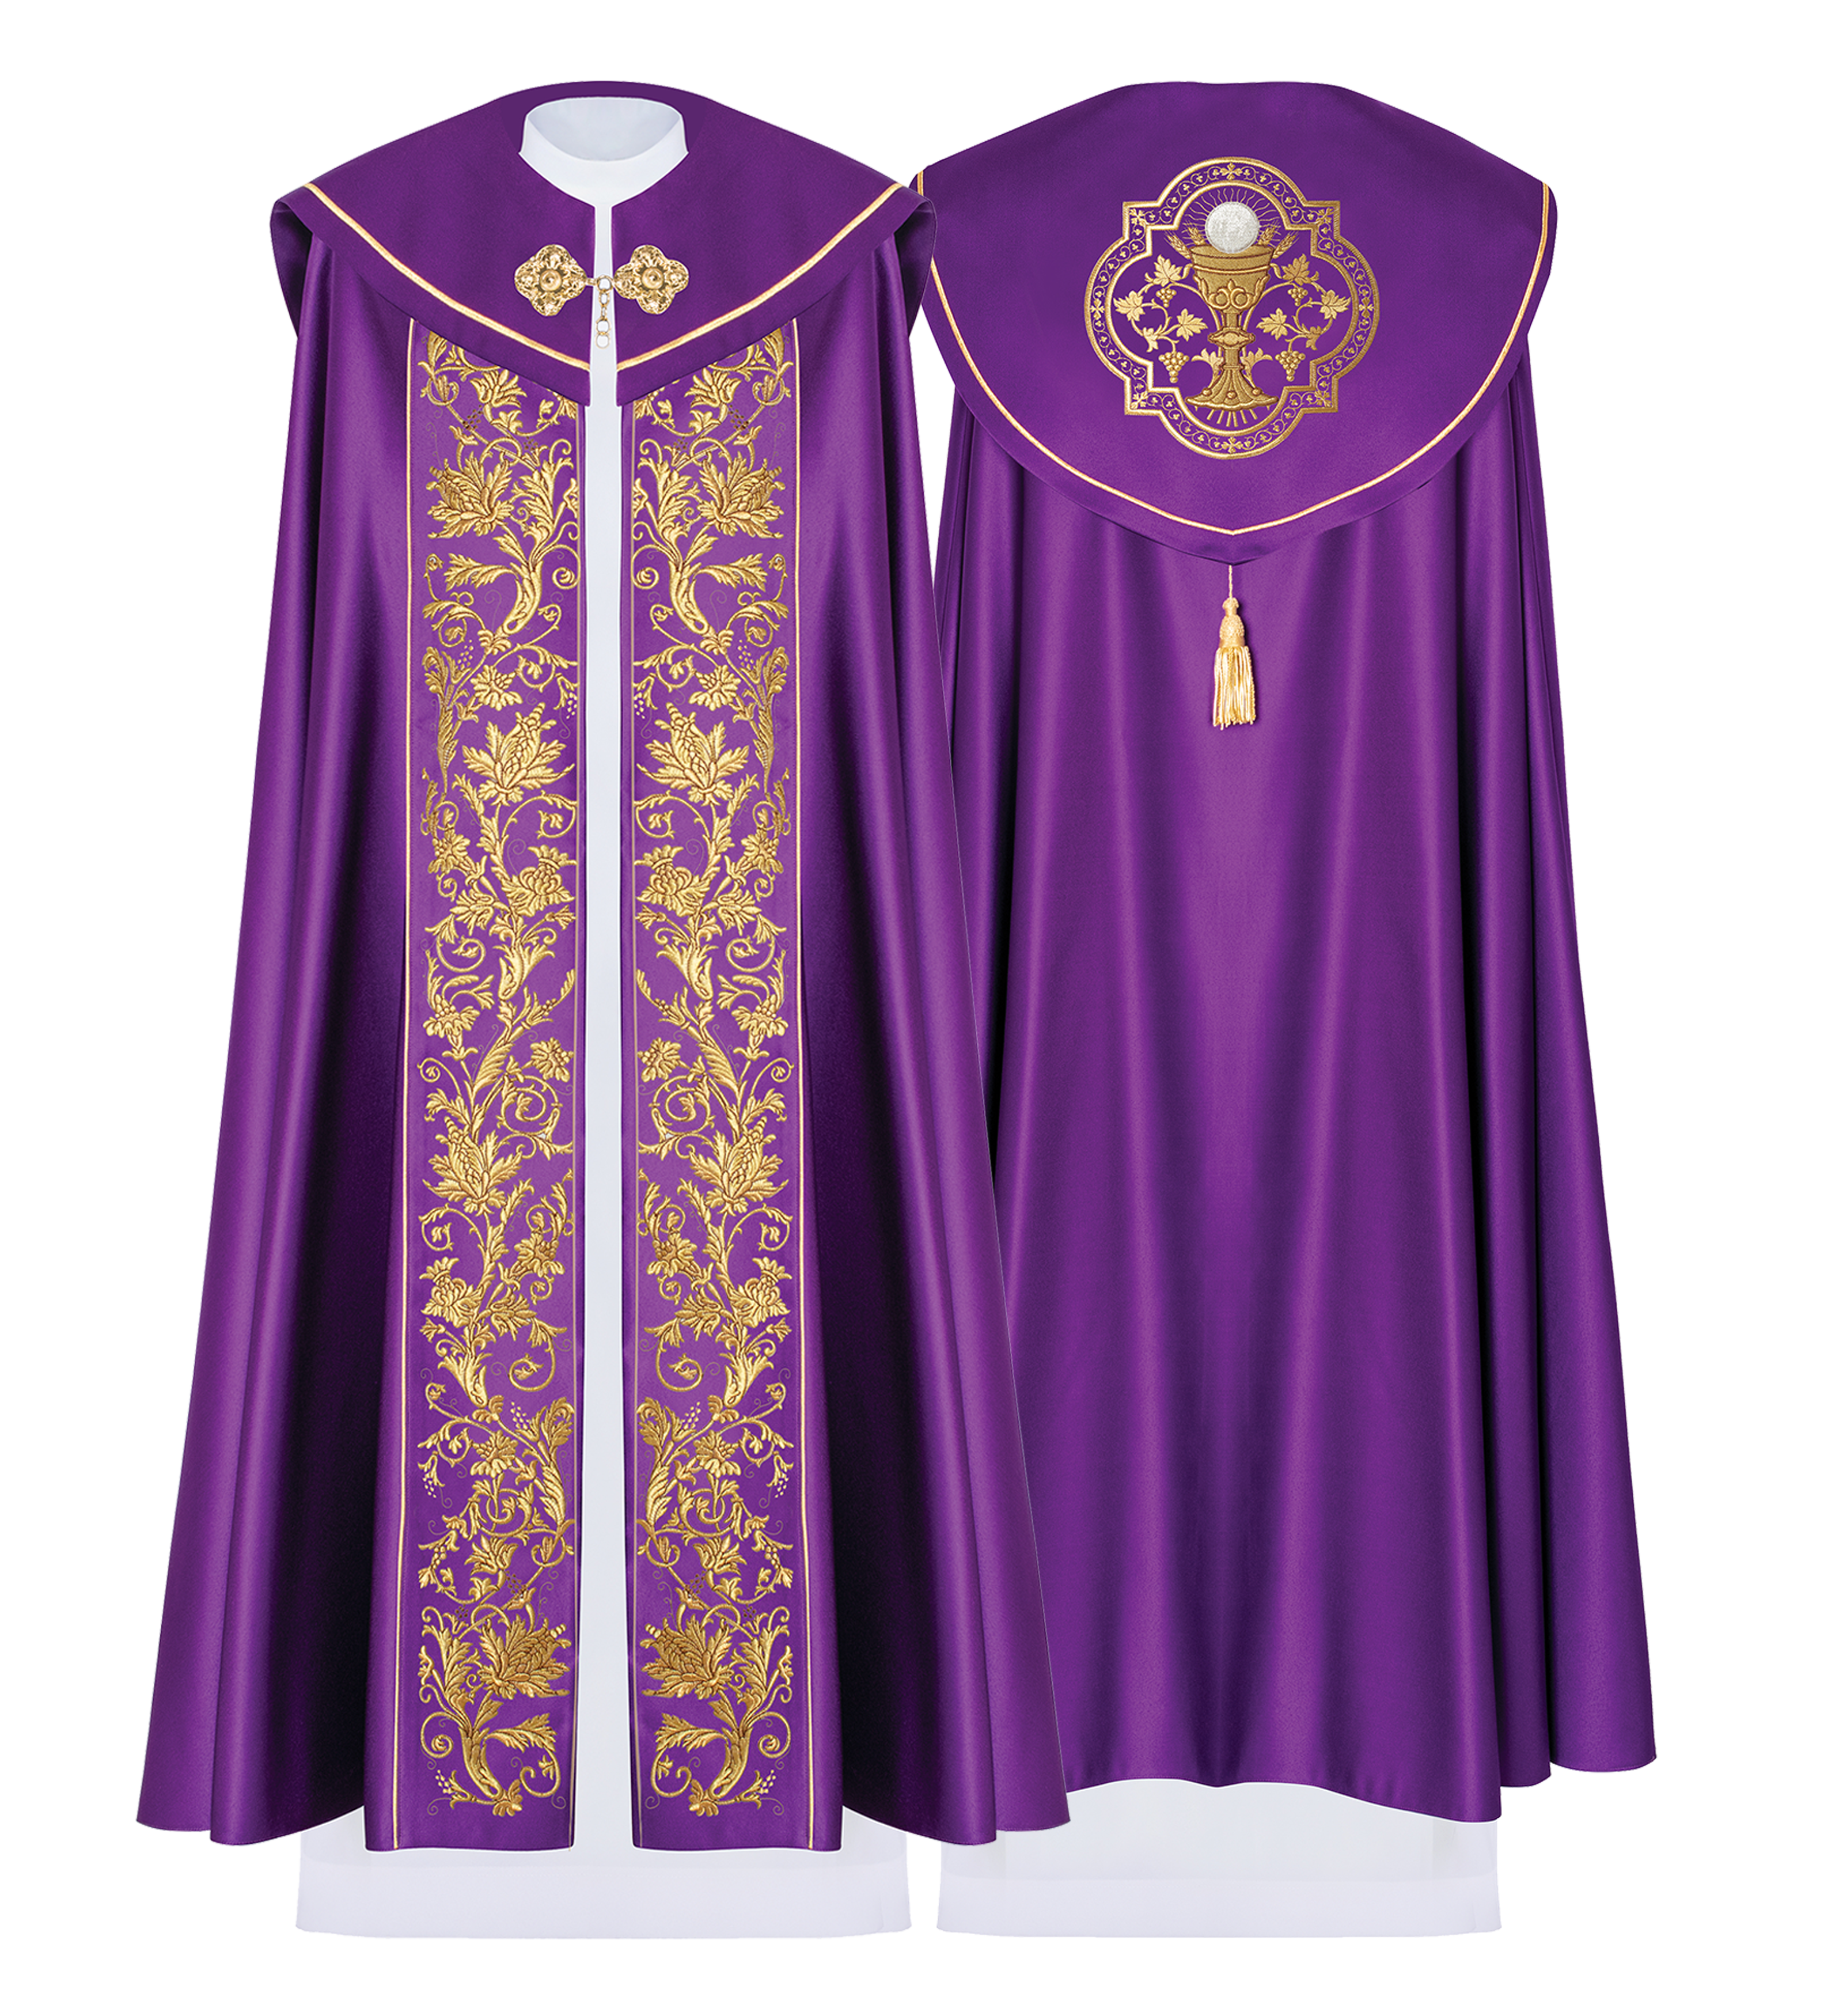 Kapa liturgiczna z haftowanym kielichem w kolorze fioletowym